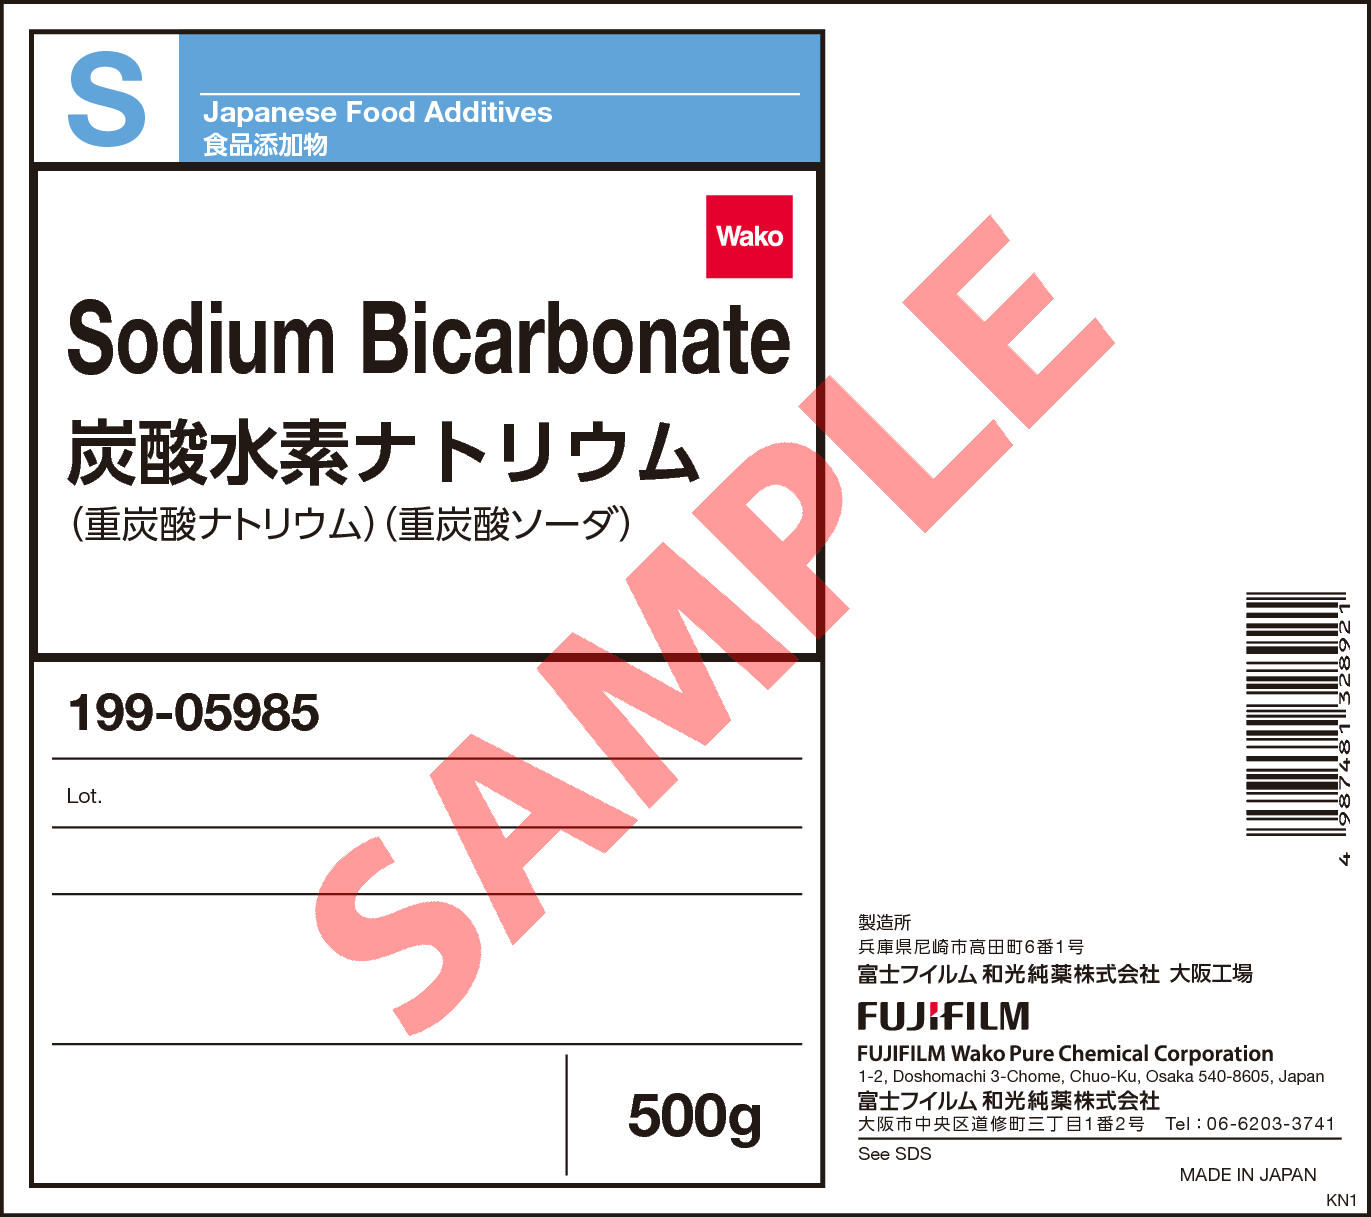 144 55 8 炭酸水素ナトリウム Sodium Bicarbonate 199 詳細情報 分析 試薬 富士フイルム和光純薬